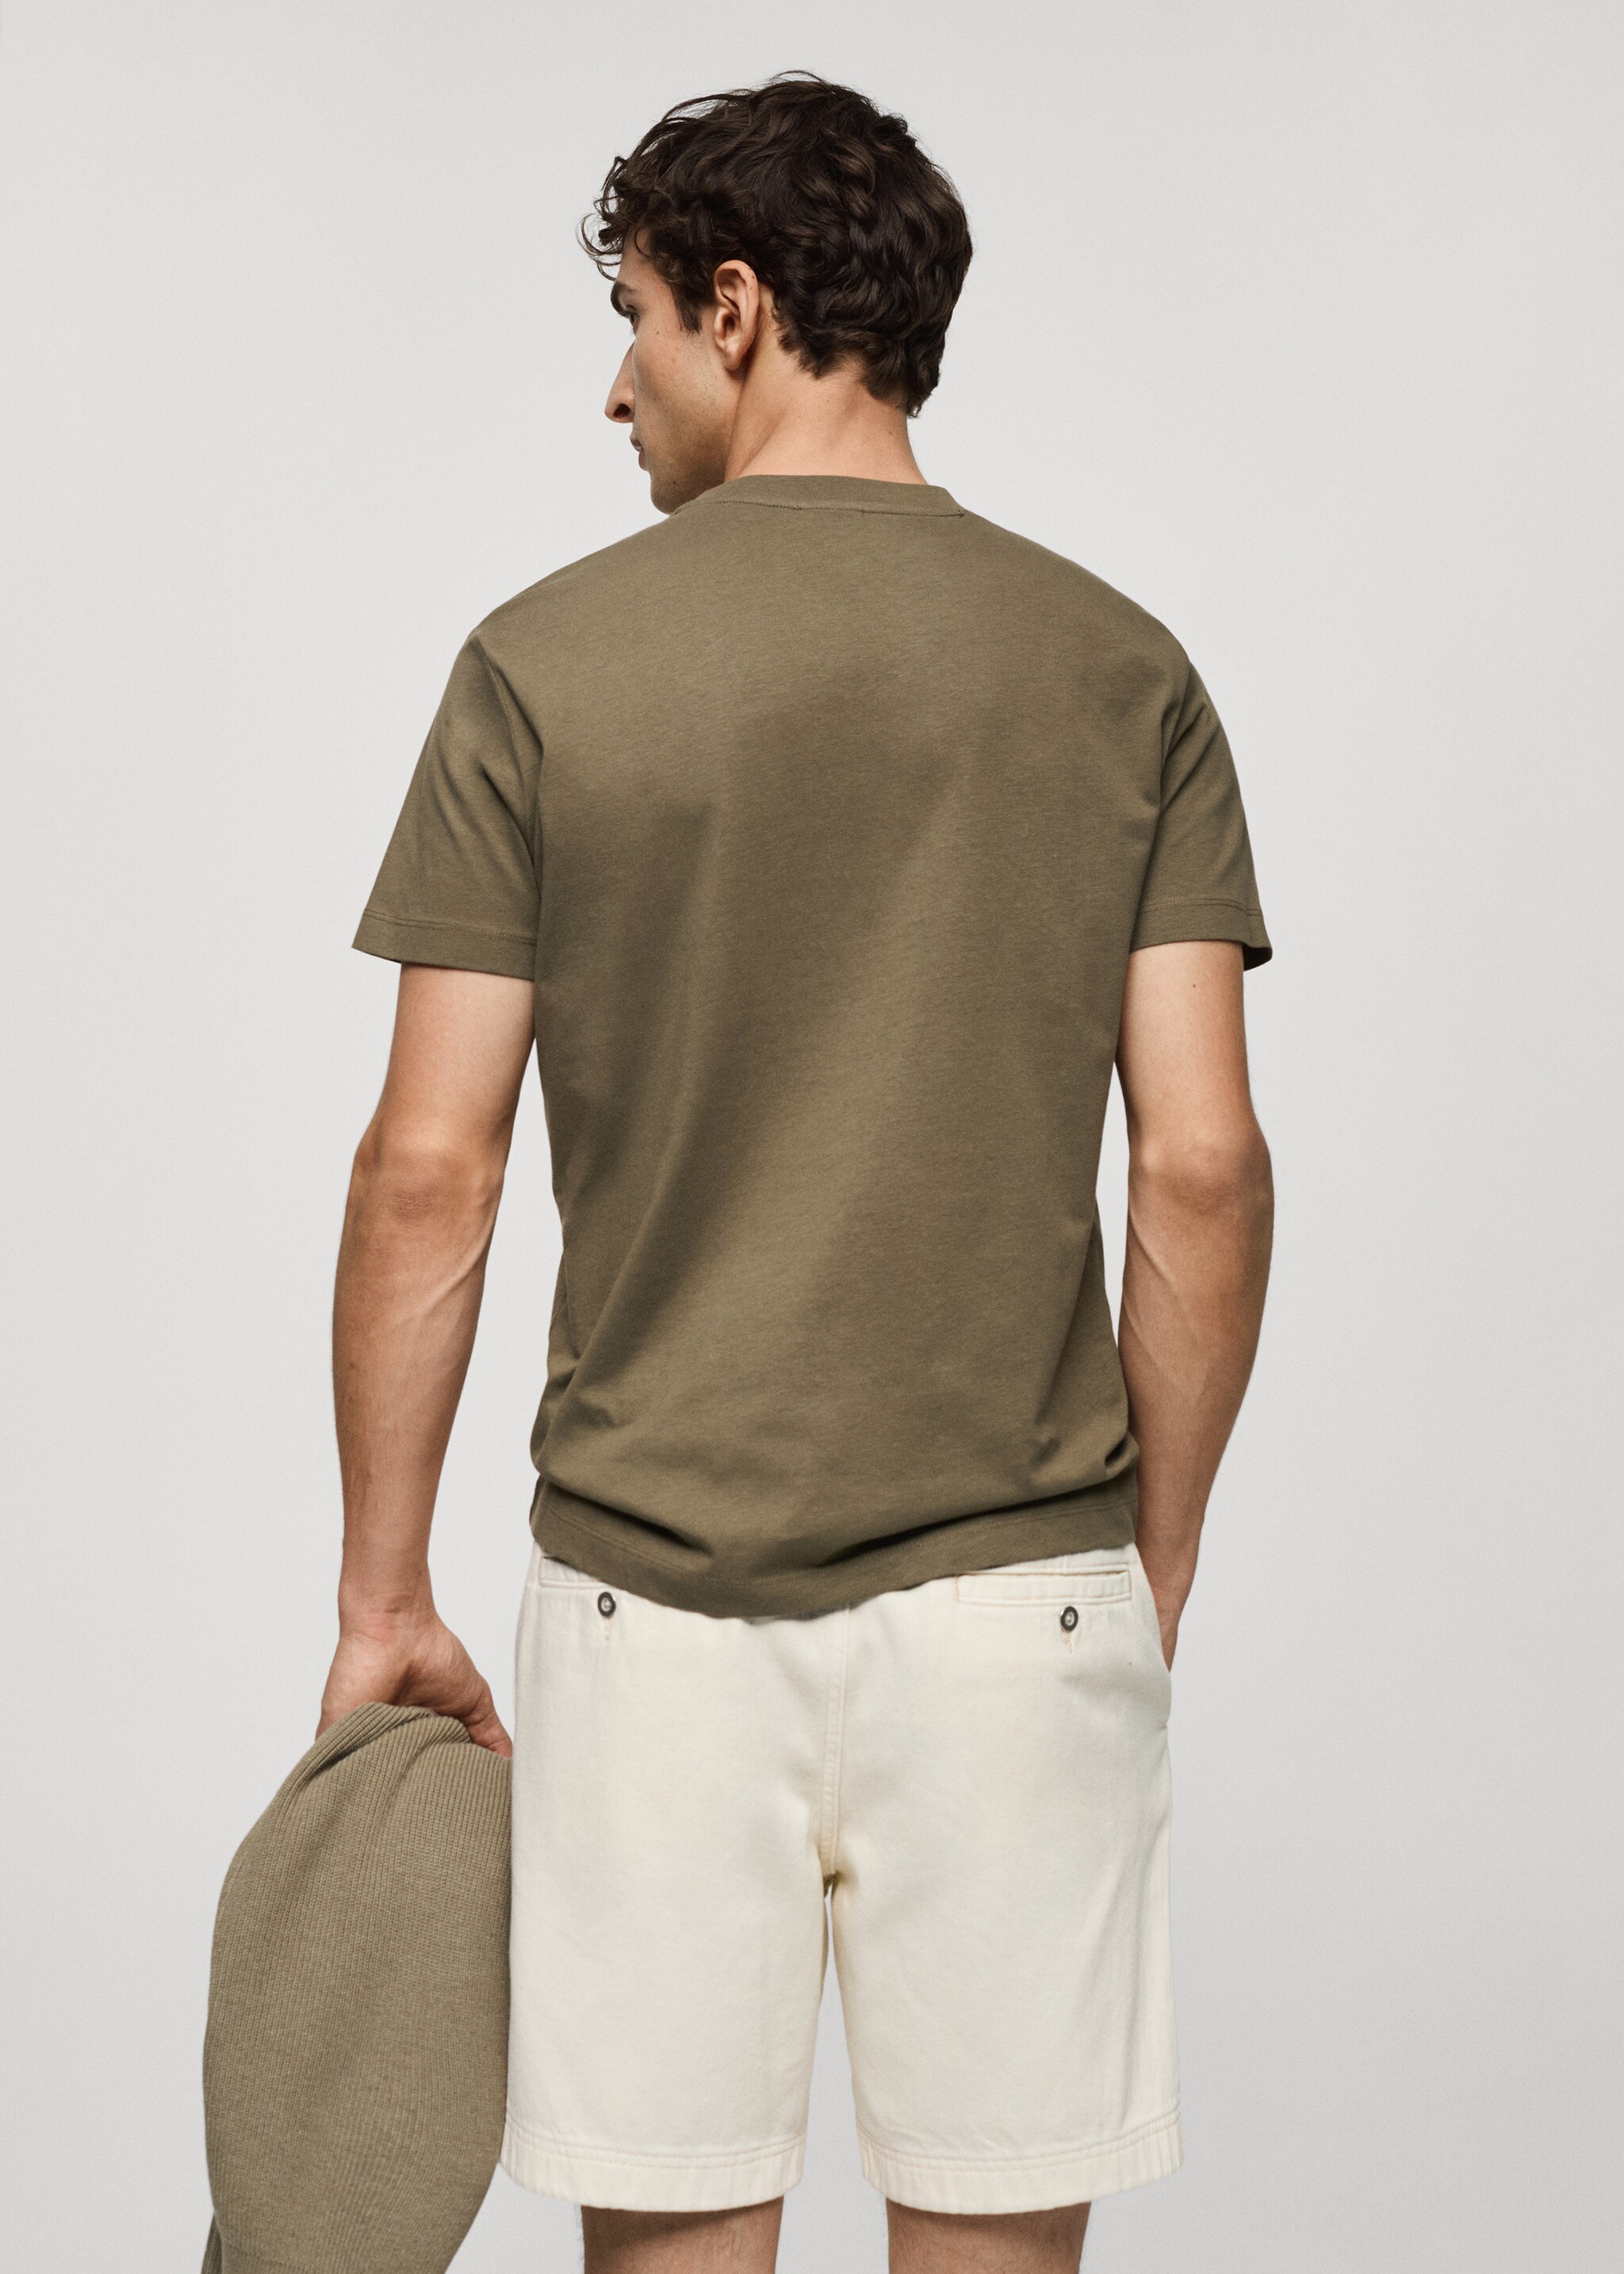 T-shirt essentiel coton stretch - Verso de l’article